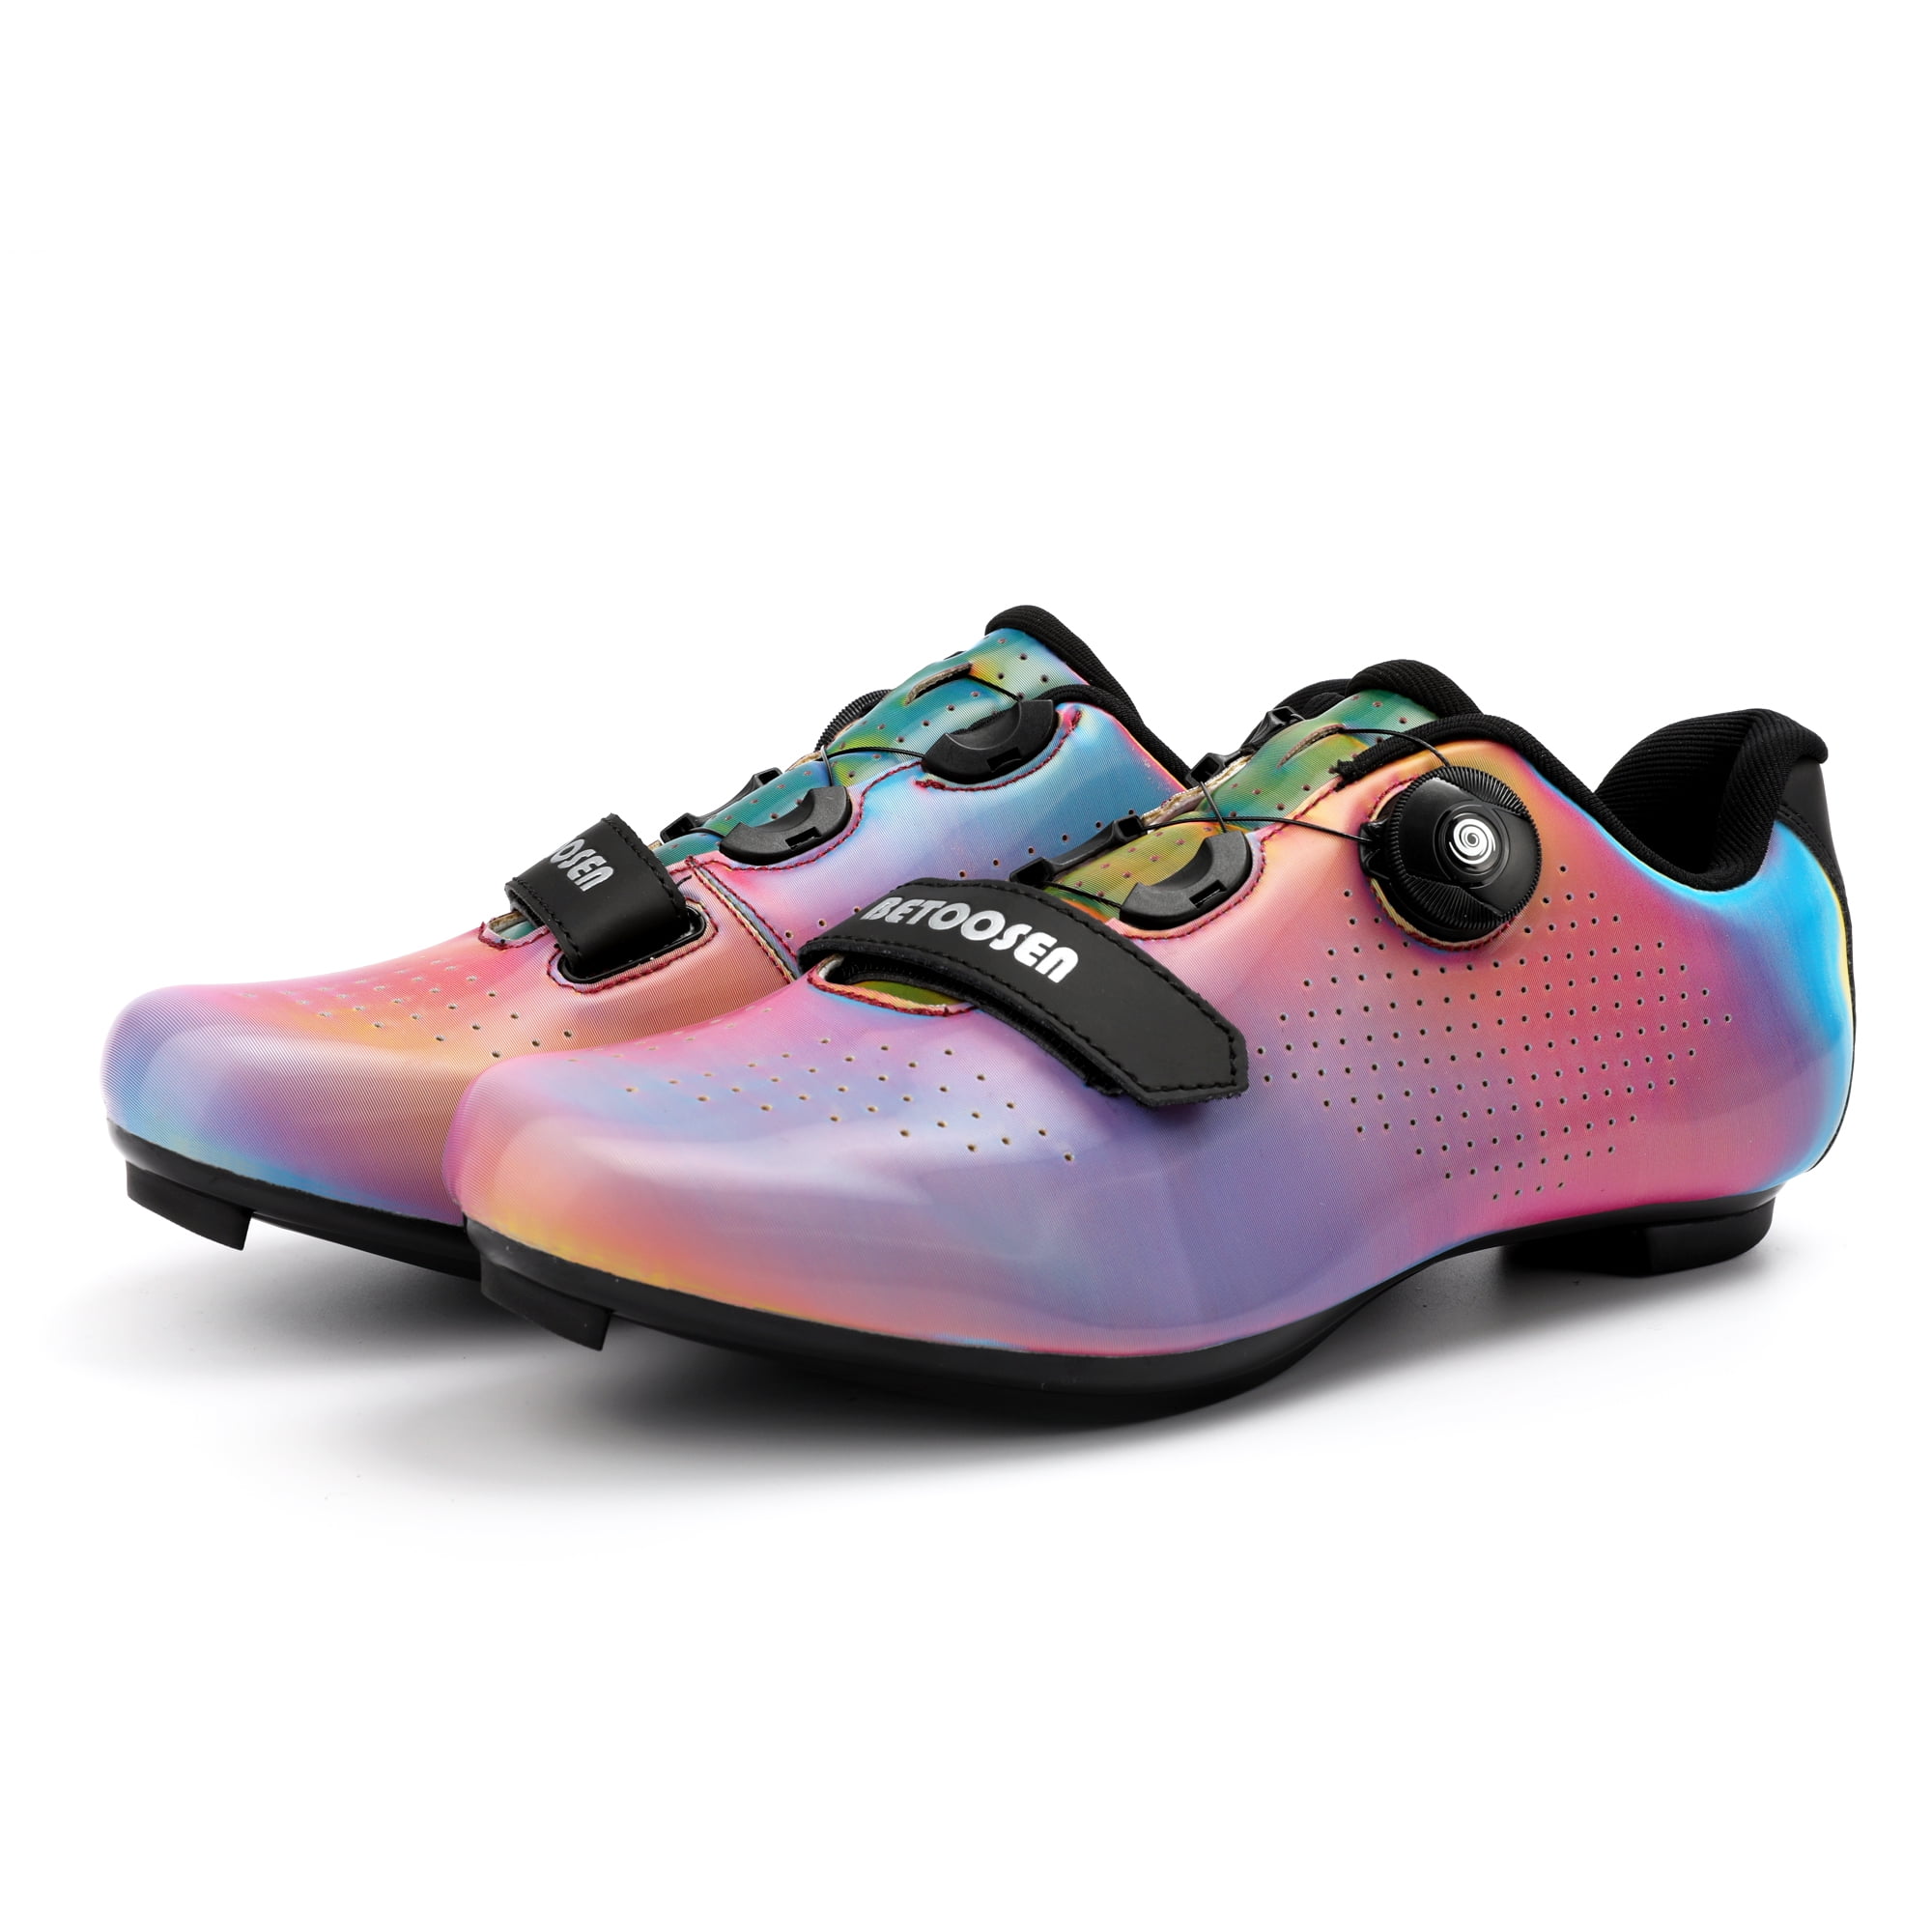 GIRO Solara II womens road cycling shoes for LOOK bike cleats 38 42 8 8.5 5 5.5 